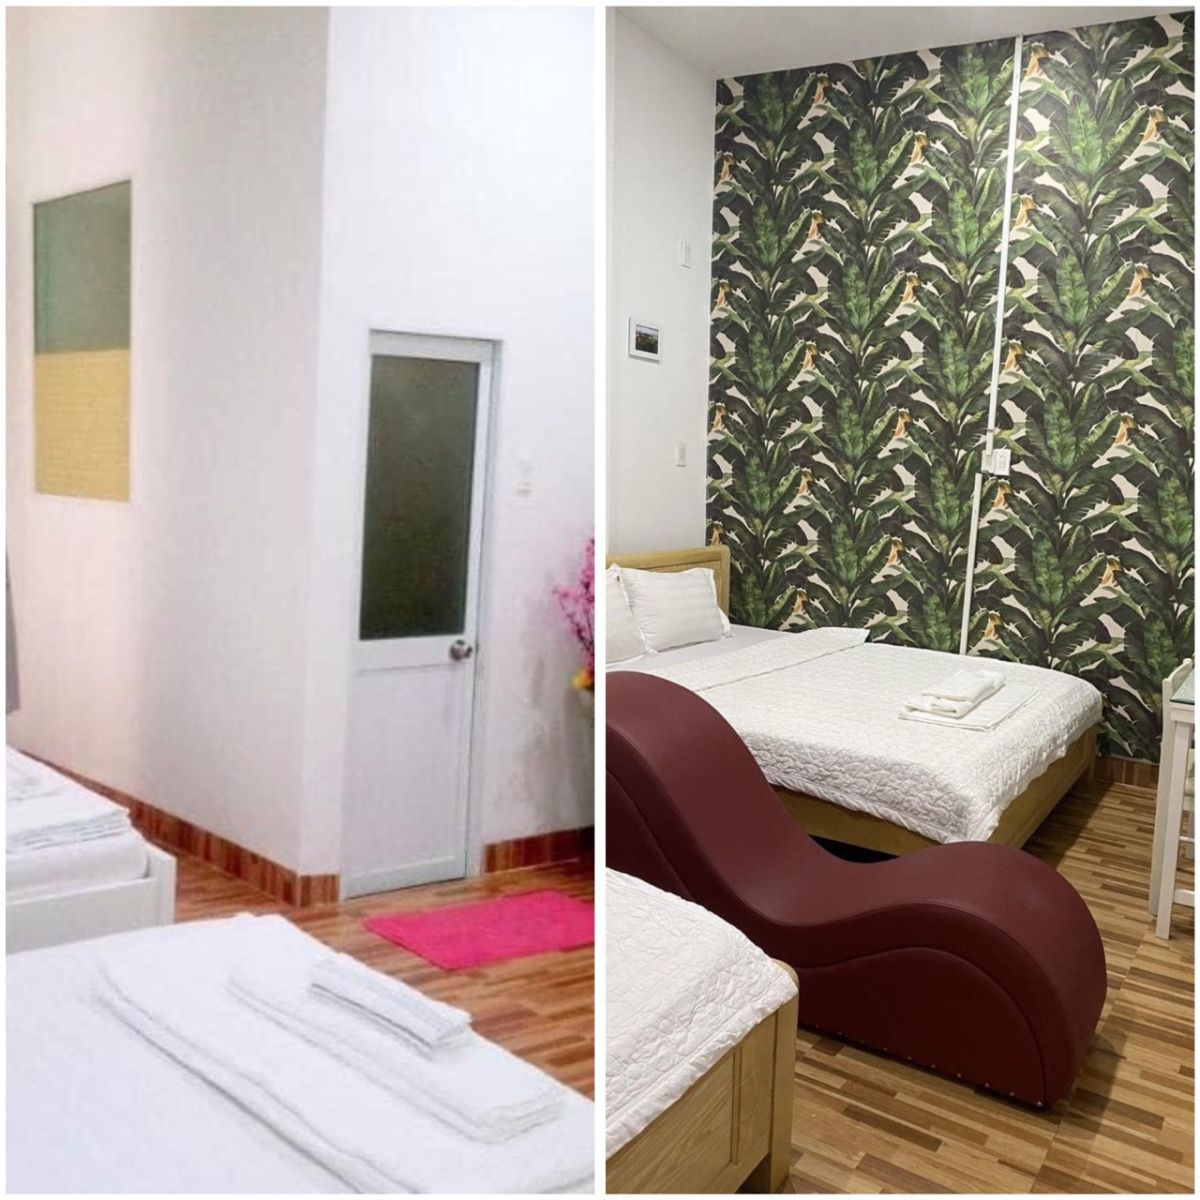 Cần bán khách sạn mini 10 phòng tại đường Đống Đa, p.Thị Nại, TP.Quy Nhơn, Bình Định - Ảnh 3